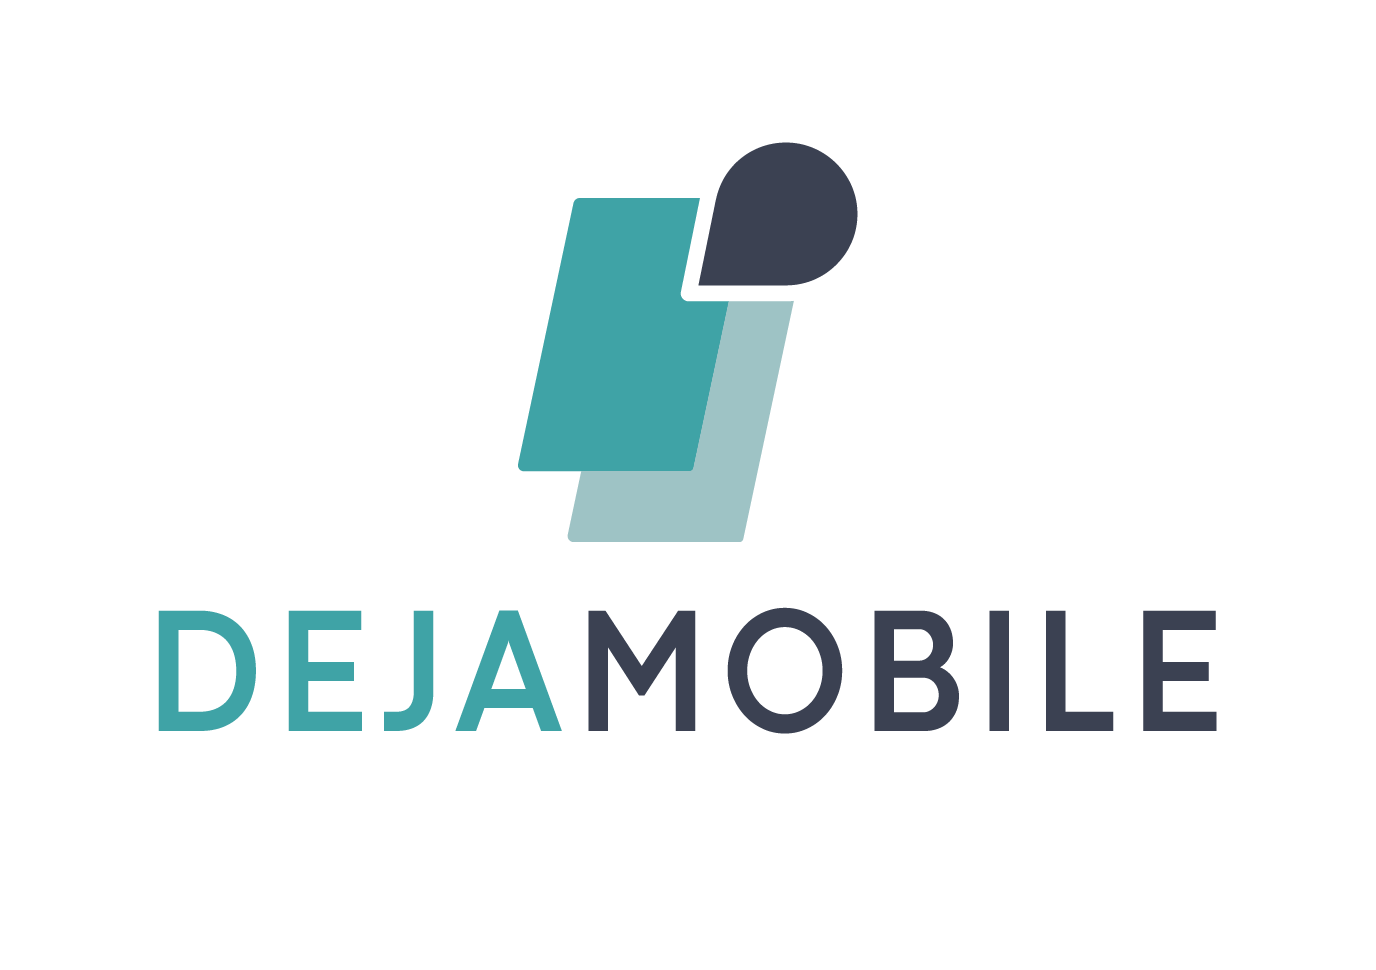 Dejamobile company logo